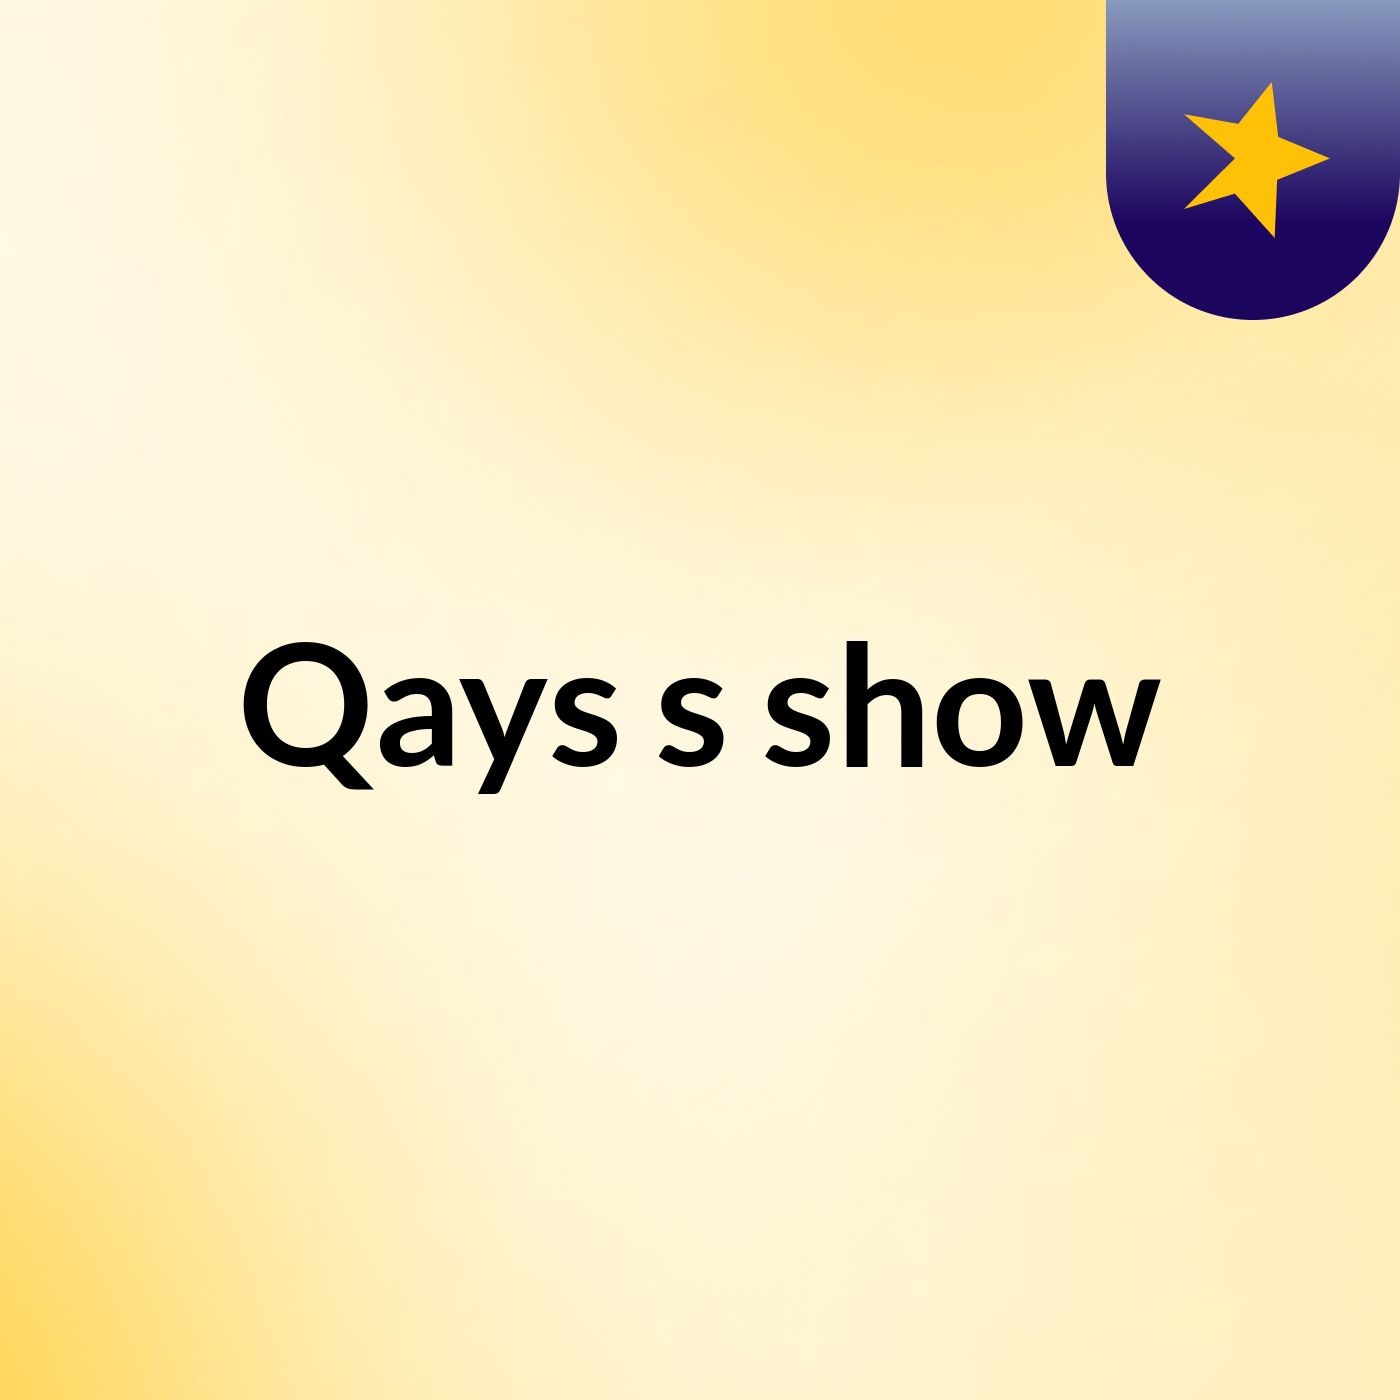 Qays's show